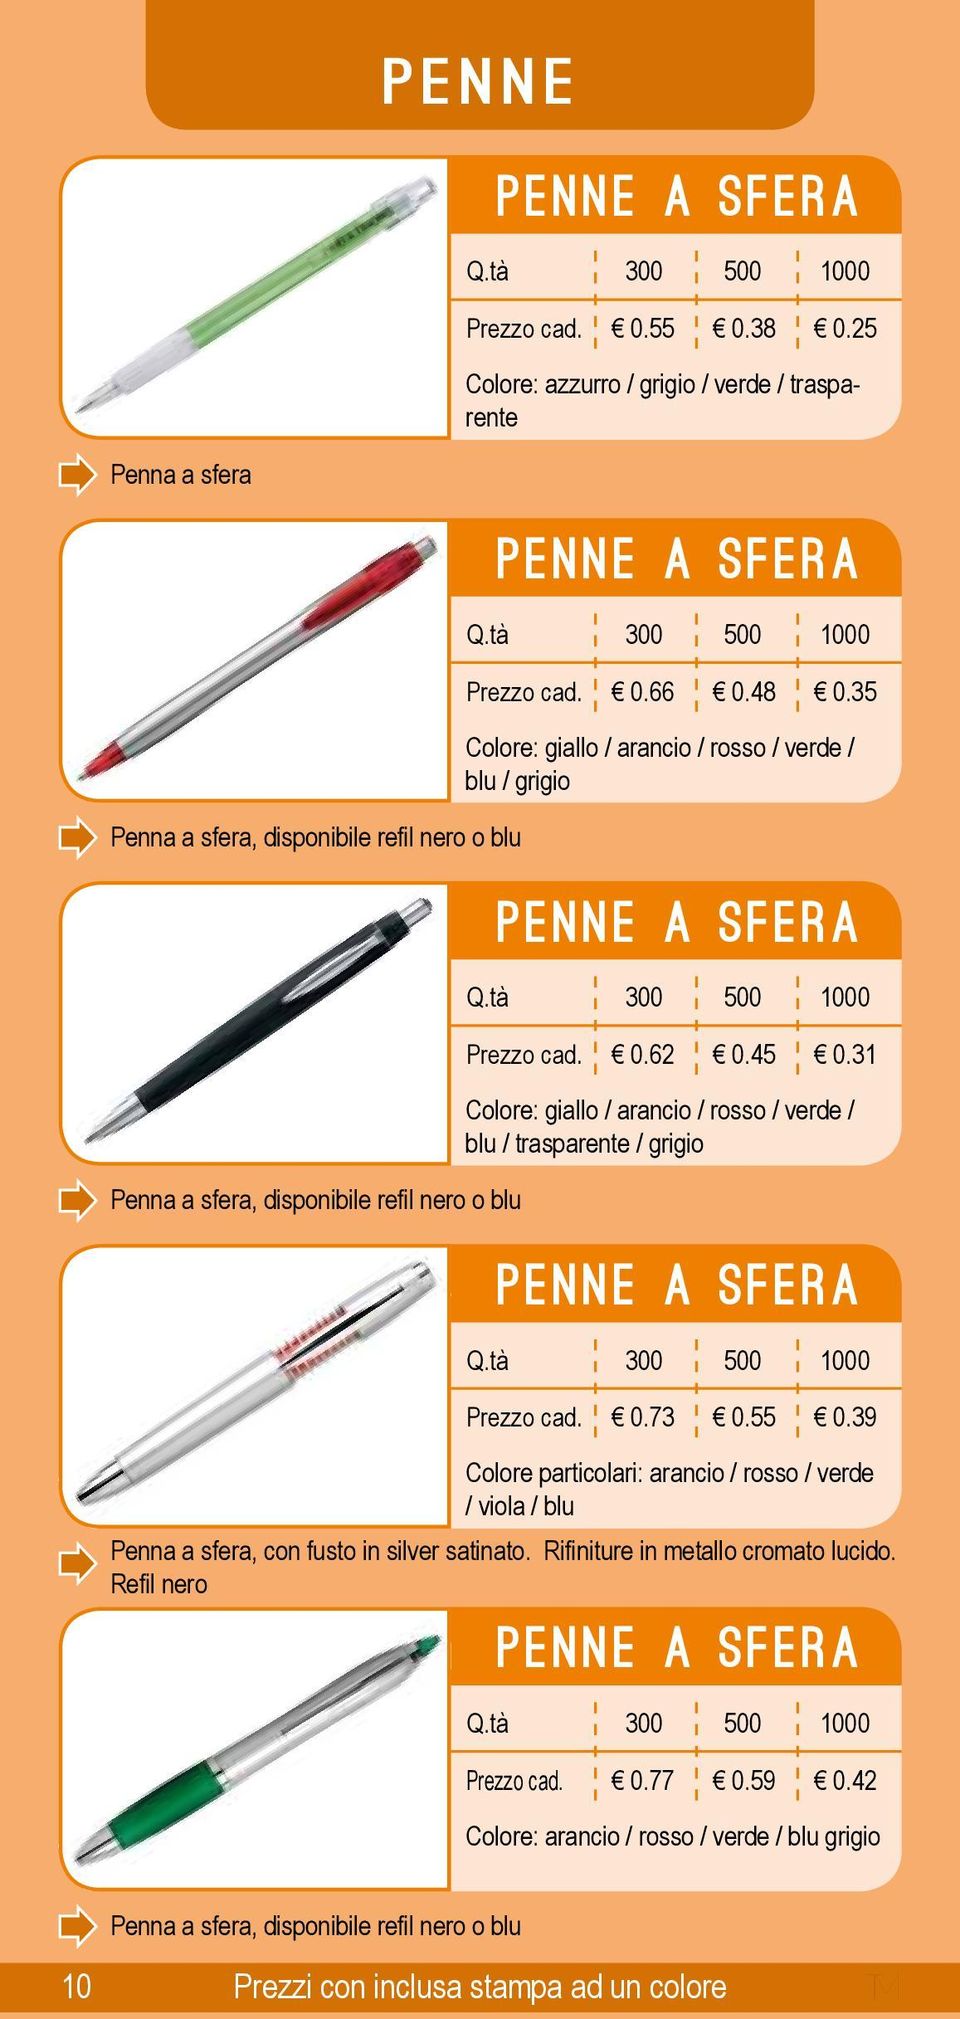 31 Penna a sfera, disponibile refil nero o blu Colore: giallo / arancio / rosso / verde / blu / trasparente / grigio 0 0.73 0.55 0.